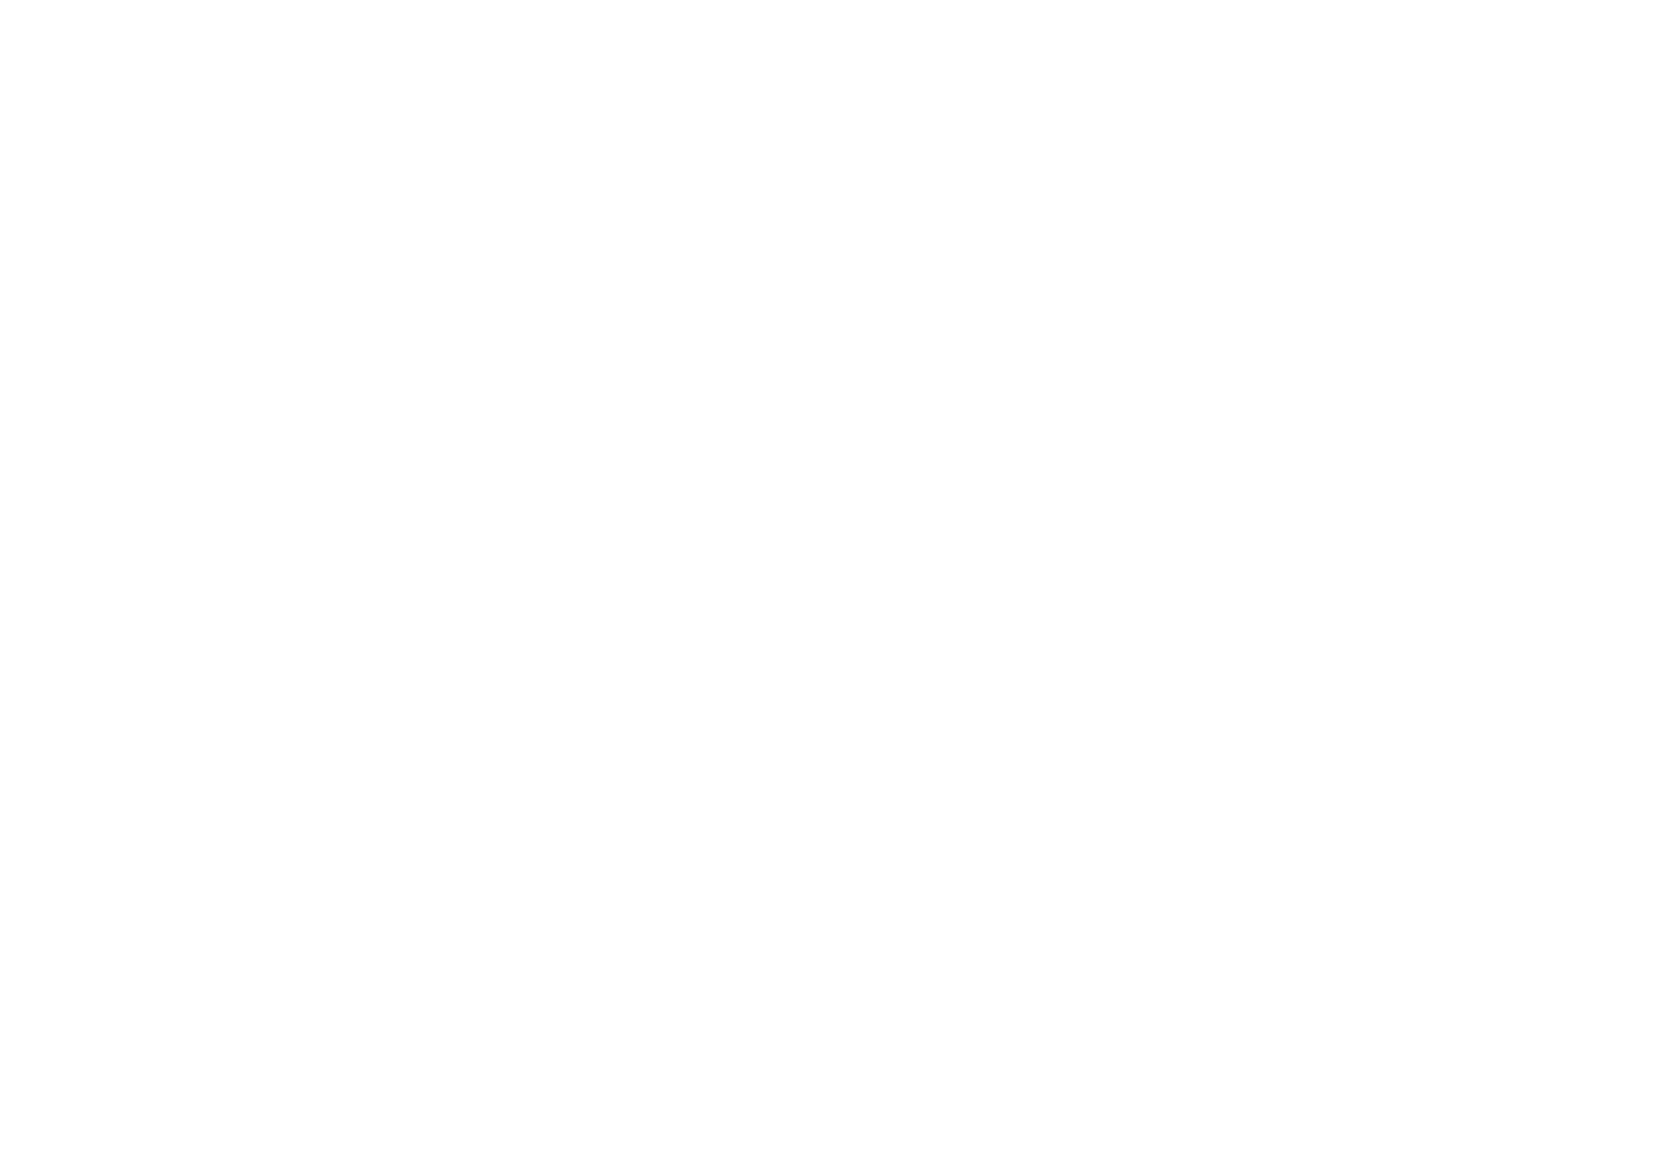 Монохромная версия логотипа - Брендбук сети медицинских клиник "Целитель"